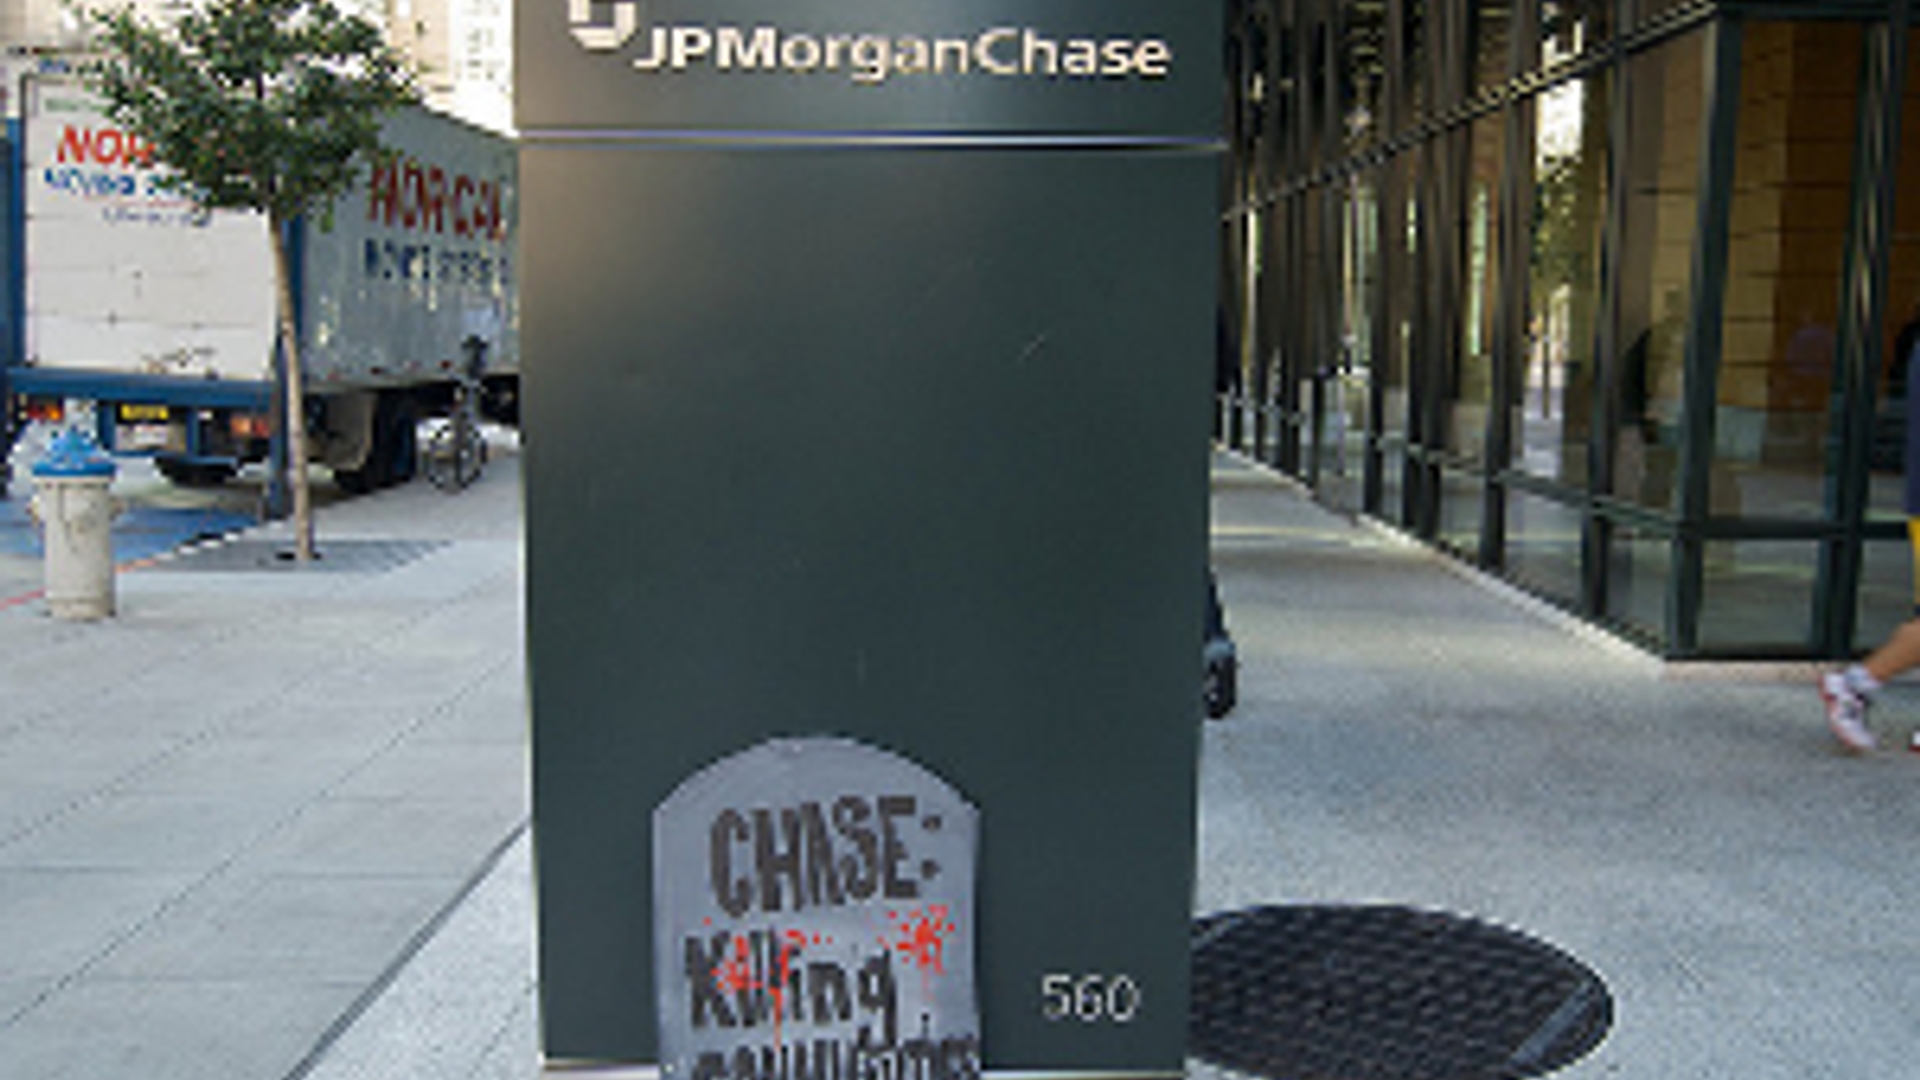 JPMorgan300.jpg